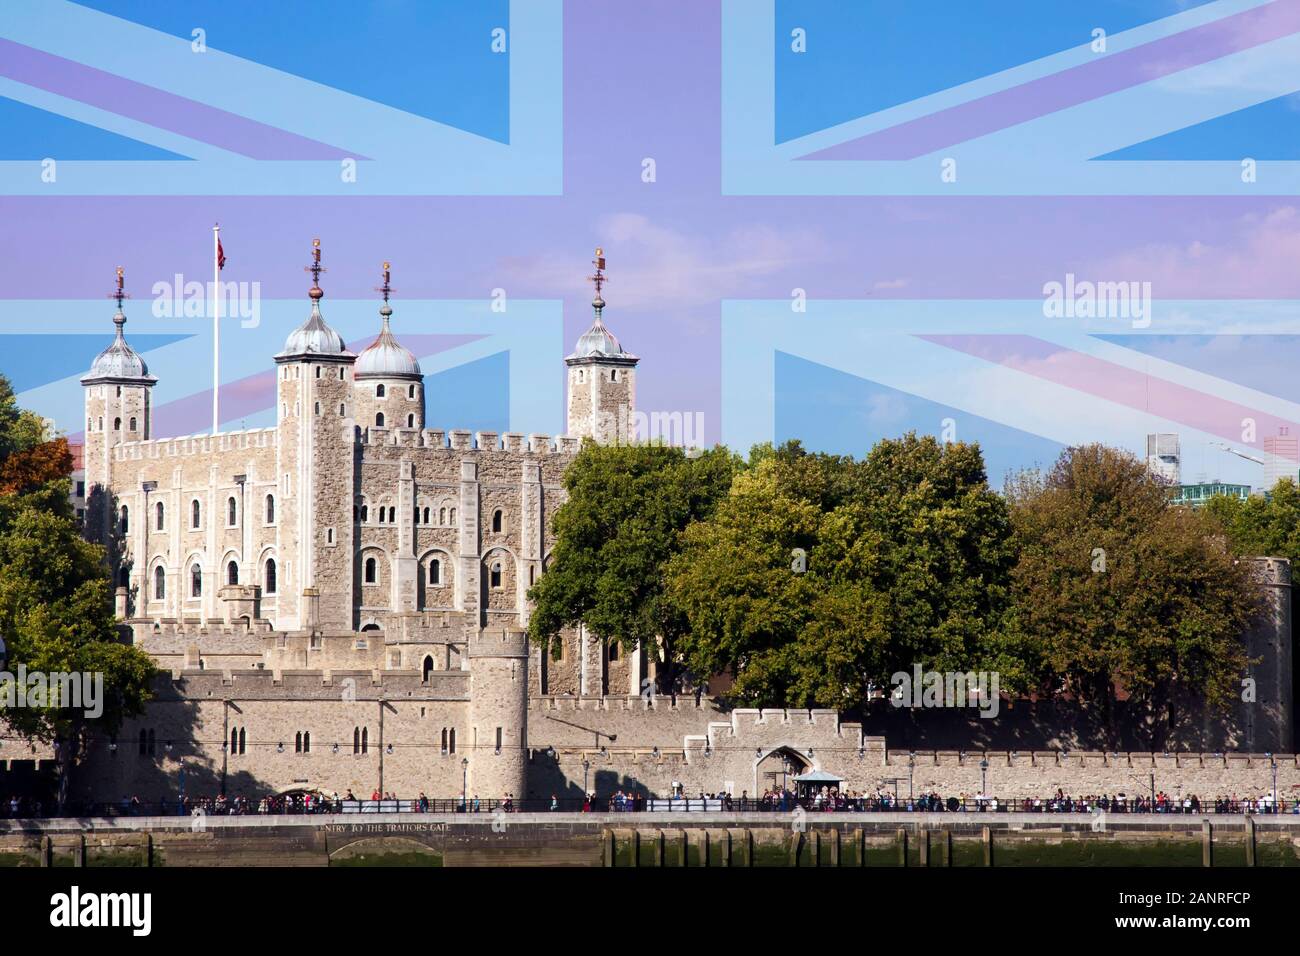 La Tour de Londres avec l'Union Jack qui se superposent. Digital image composite. Banque D'Images